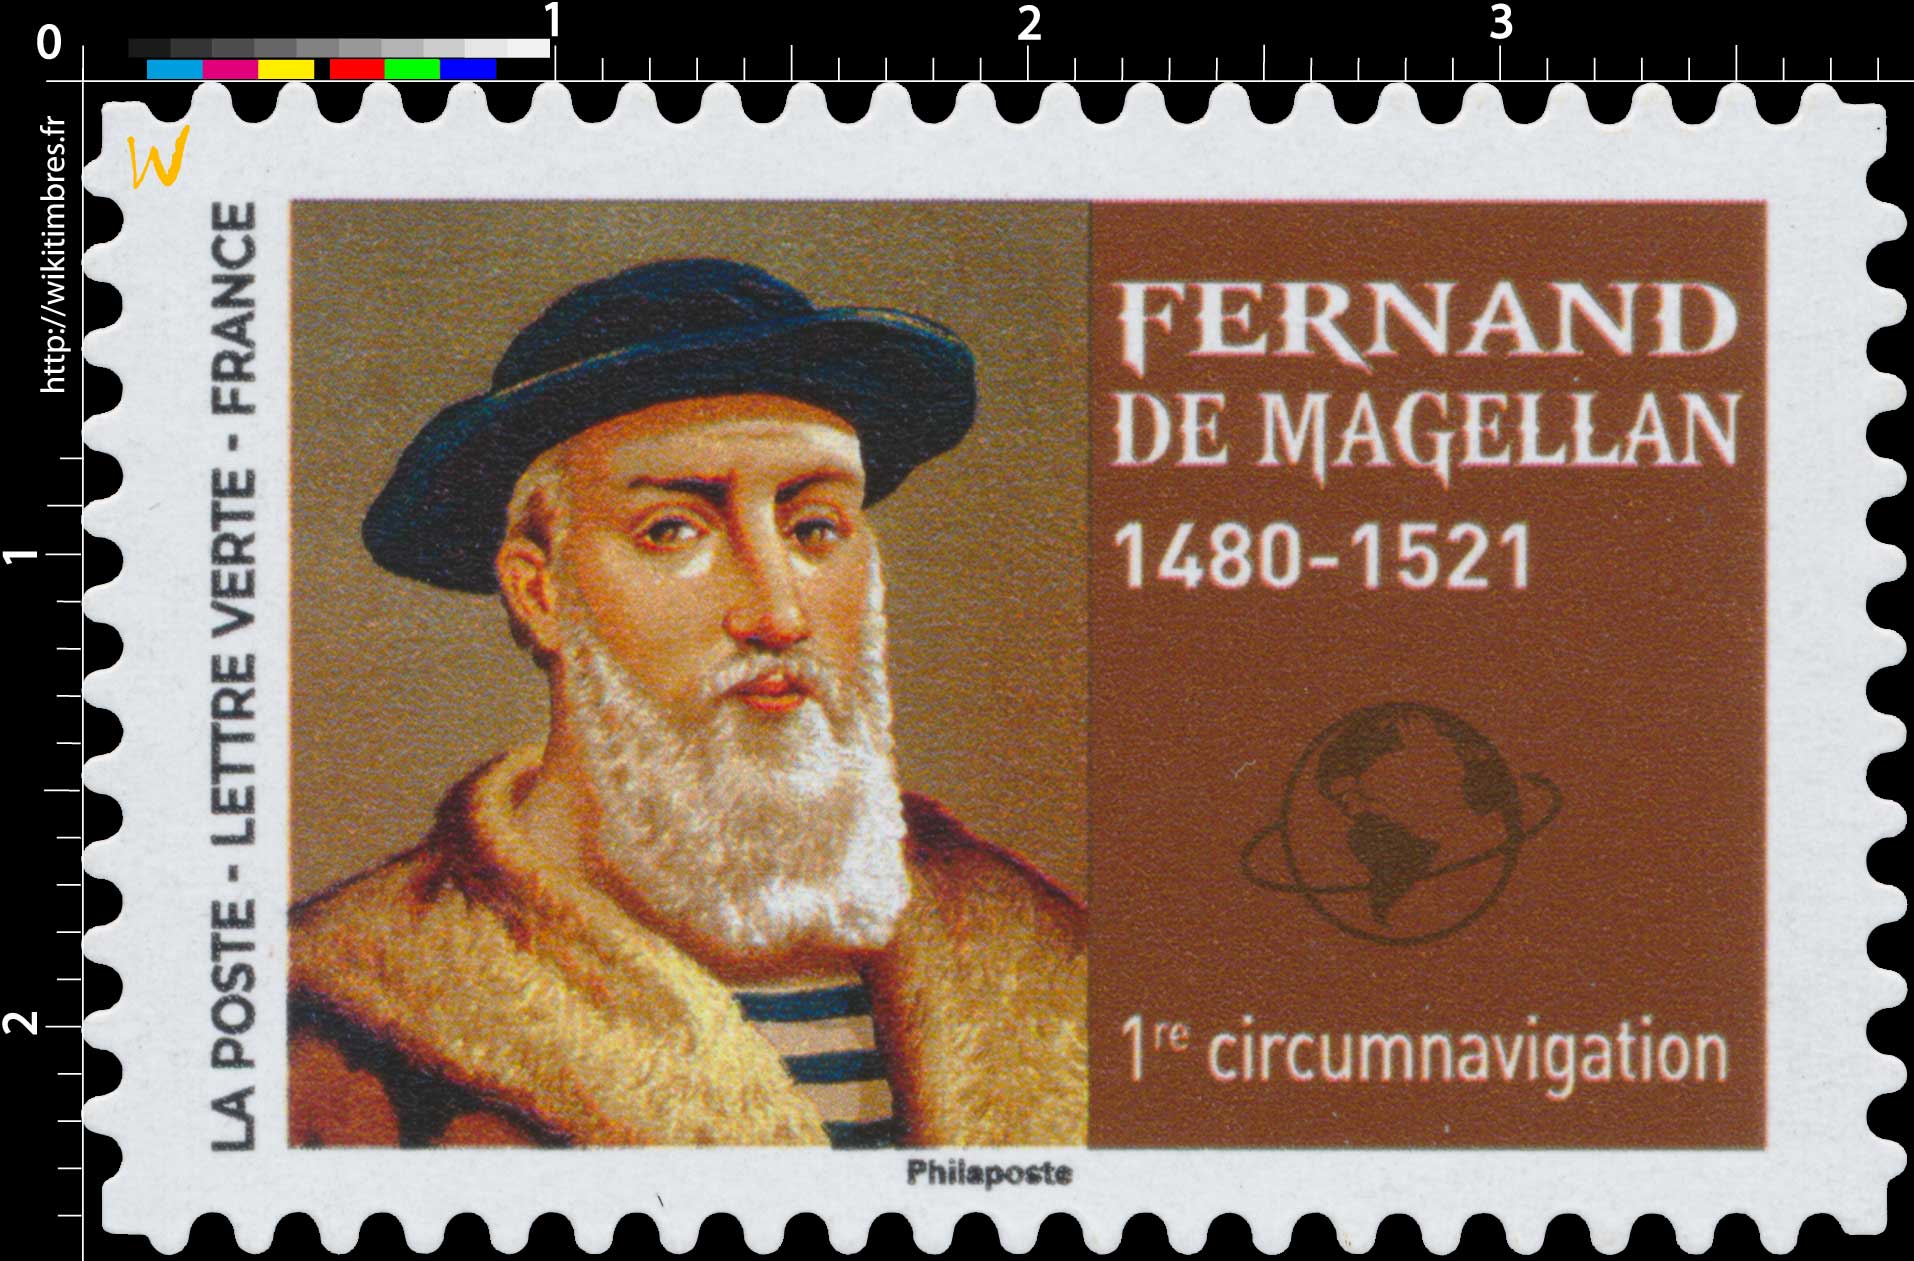 2022 Fernand de Magellan 1480 - 1521 - 1re Circumnavigation